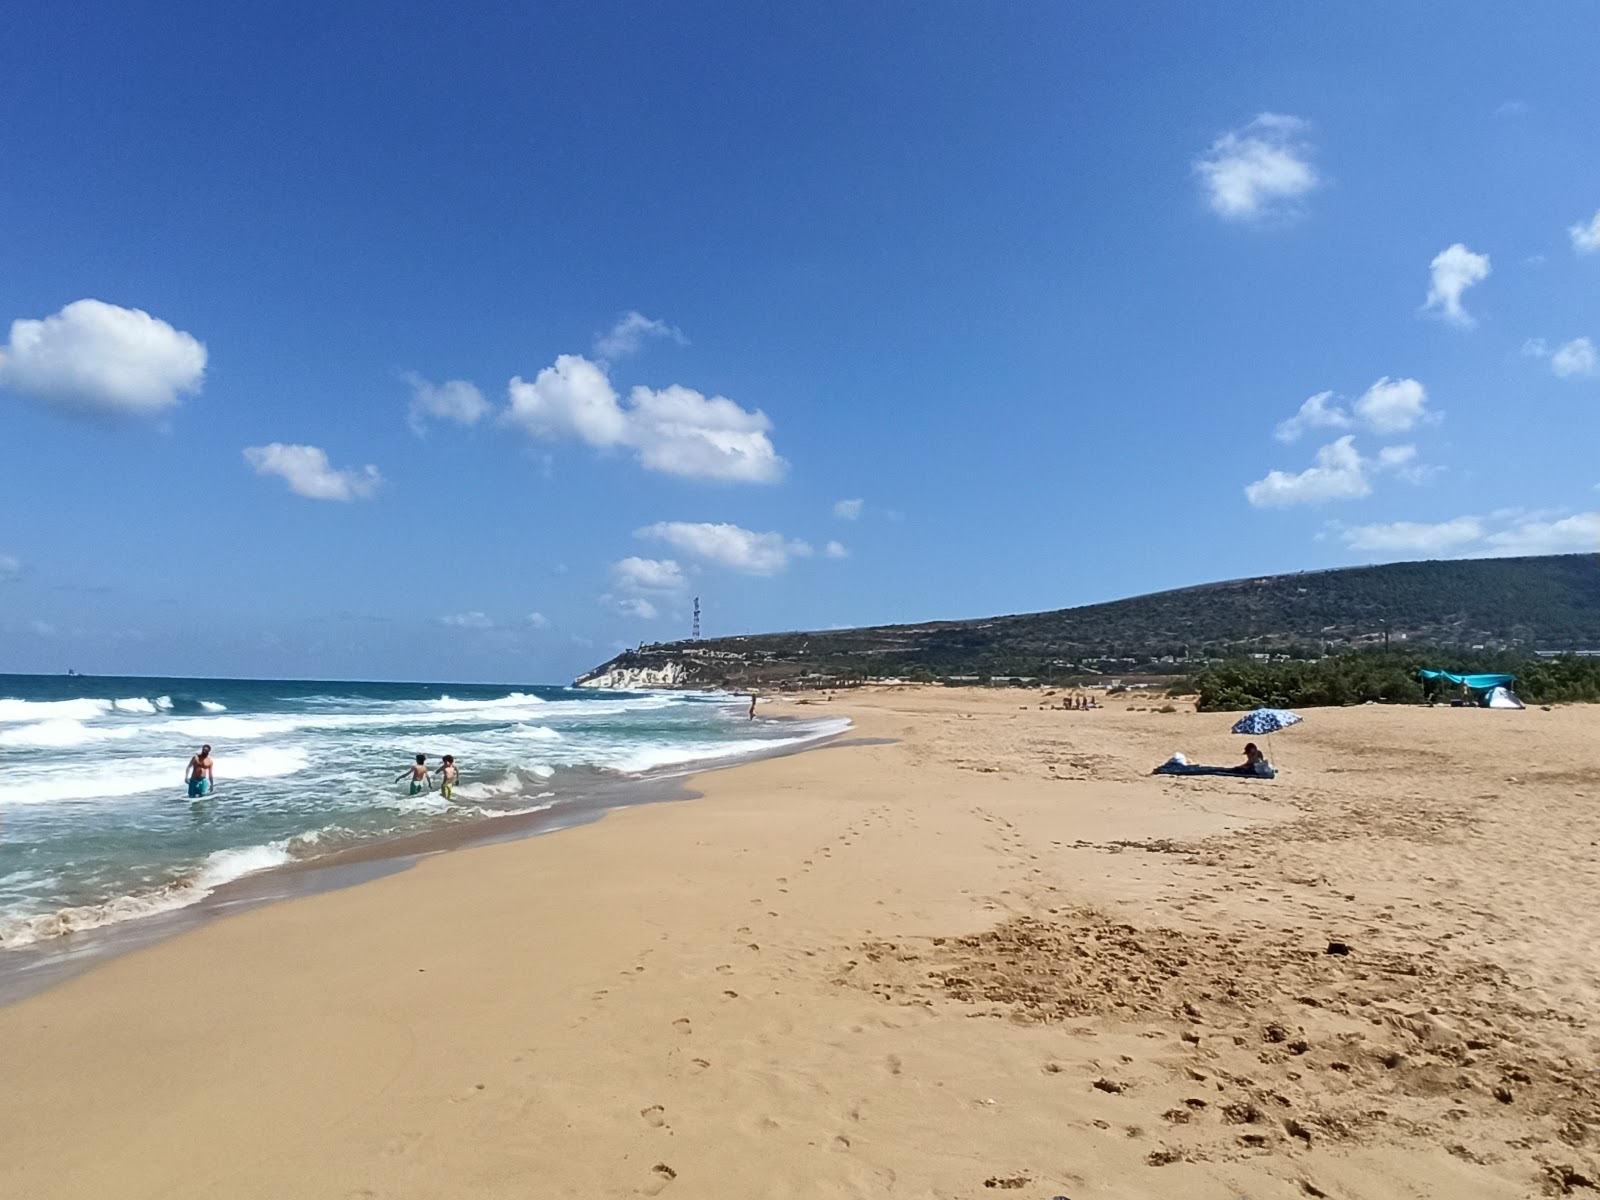 Fotografija Yefet's beach priljubljeno mesto med poznavalci sprostitve